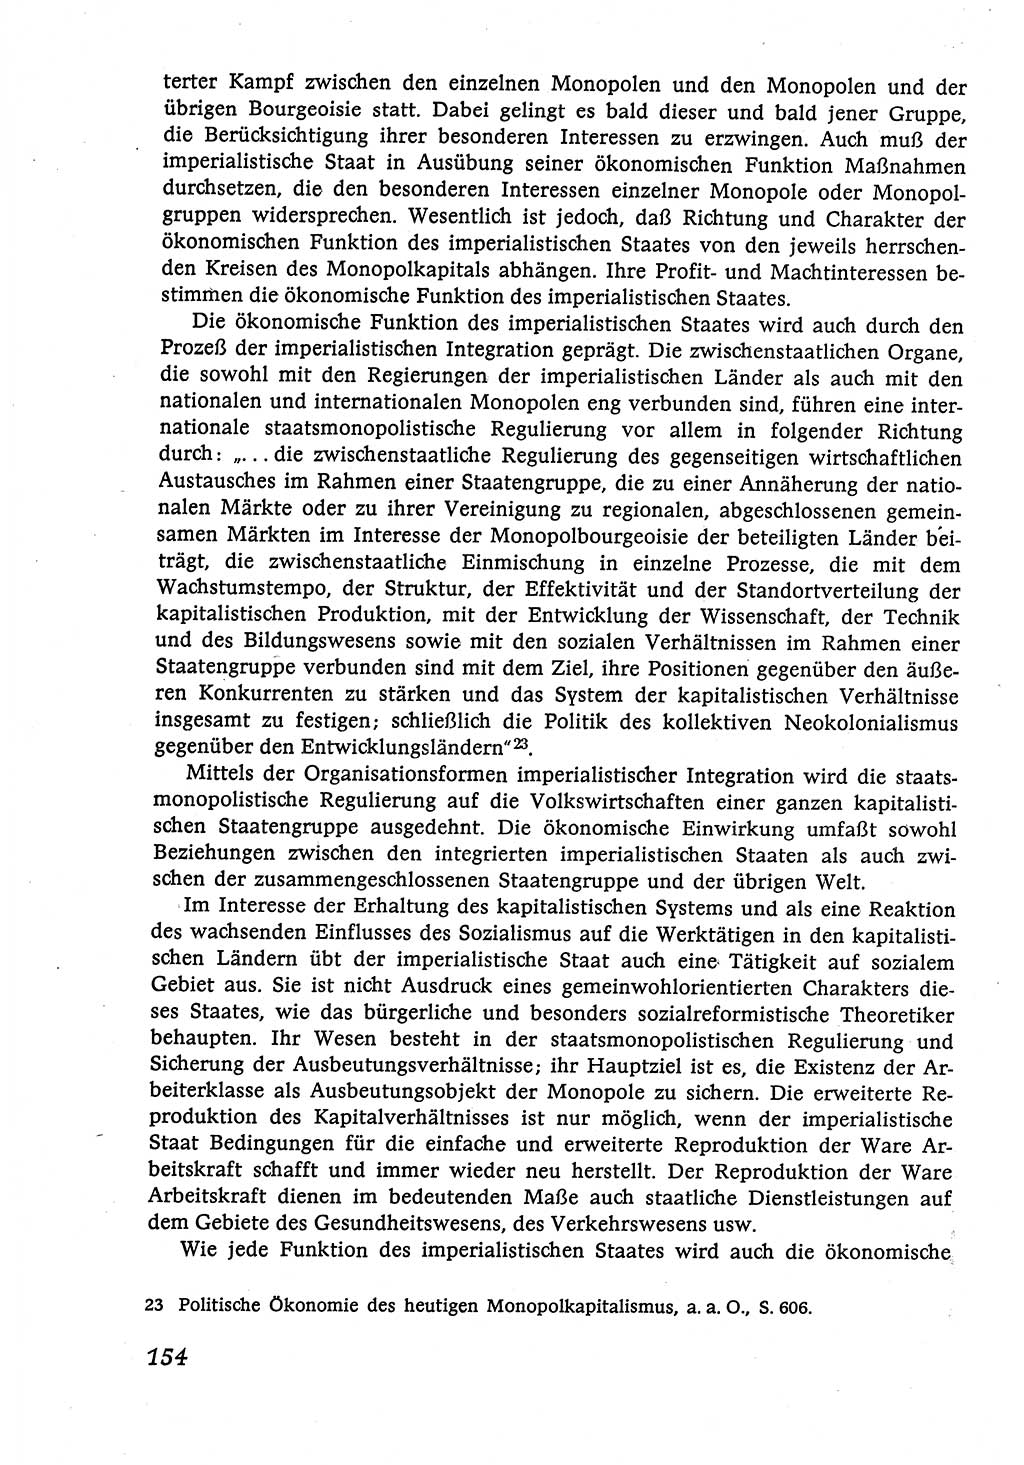 Marxistisch-leninistische (ML) Staats- und Rechtstheorie [Deutsche Demokratische Republik (DDR)], Lehrbuch 1980, Seite 154 (ML St.-R.-Th. DDR Lb. 1980, S. 154)